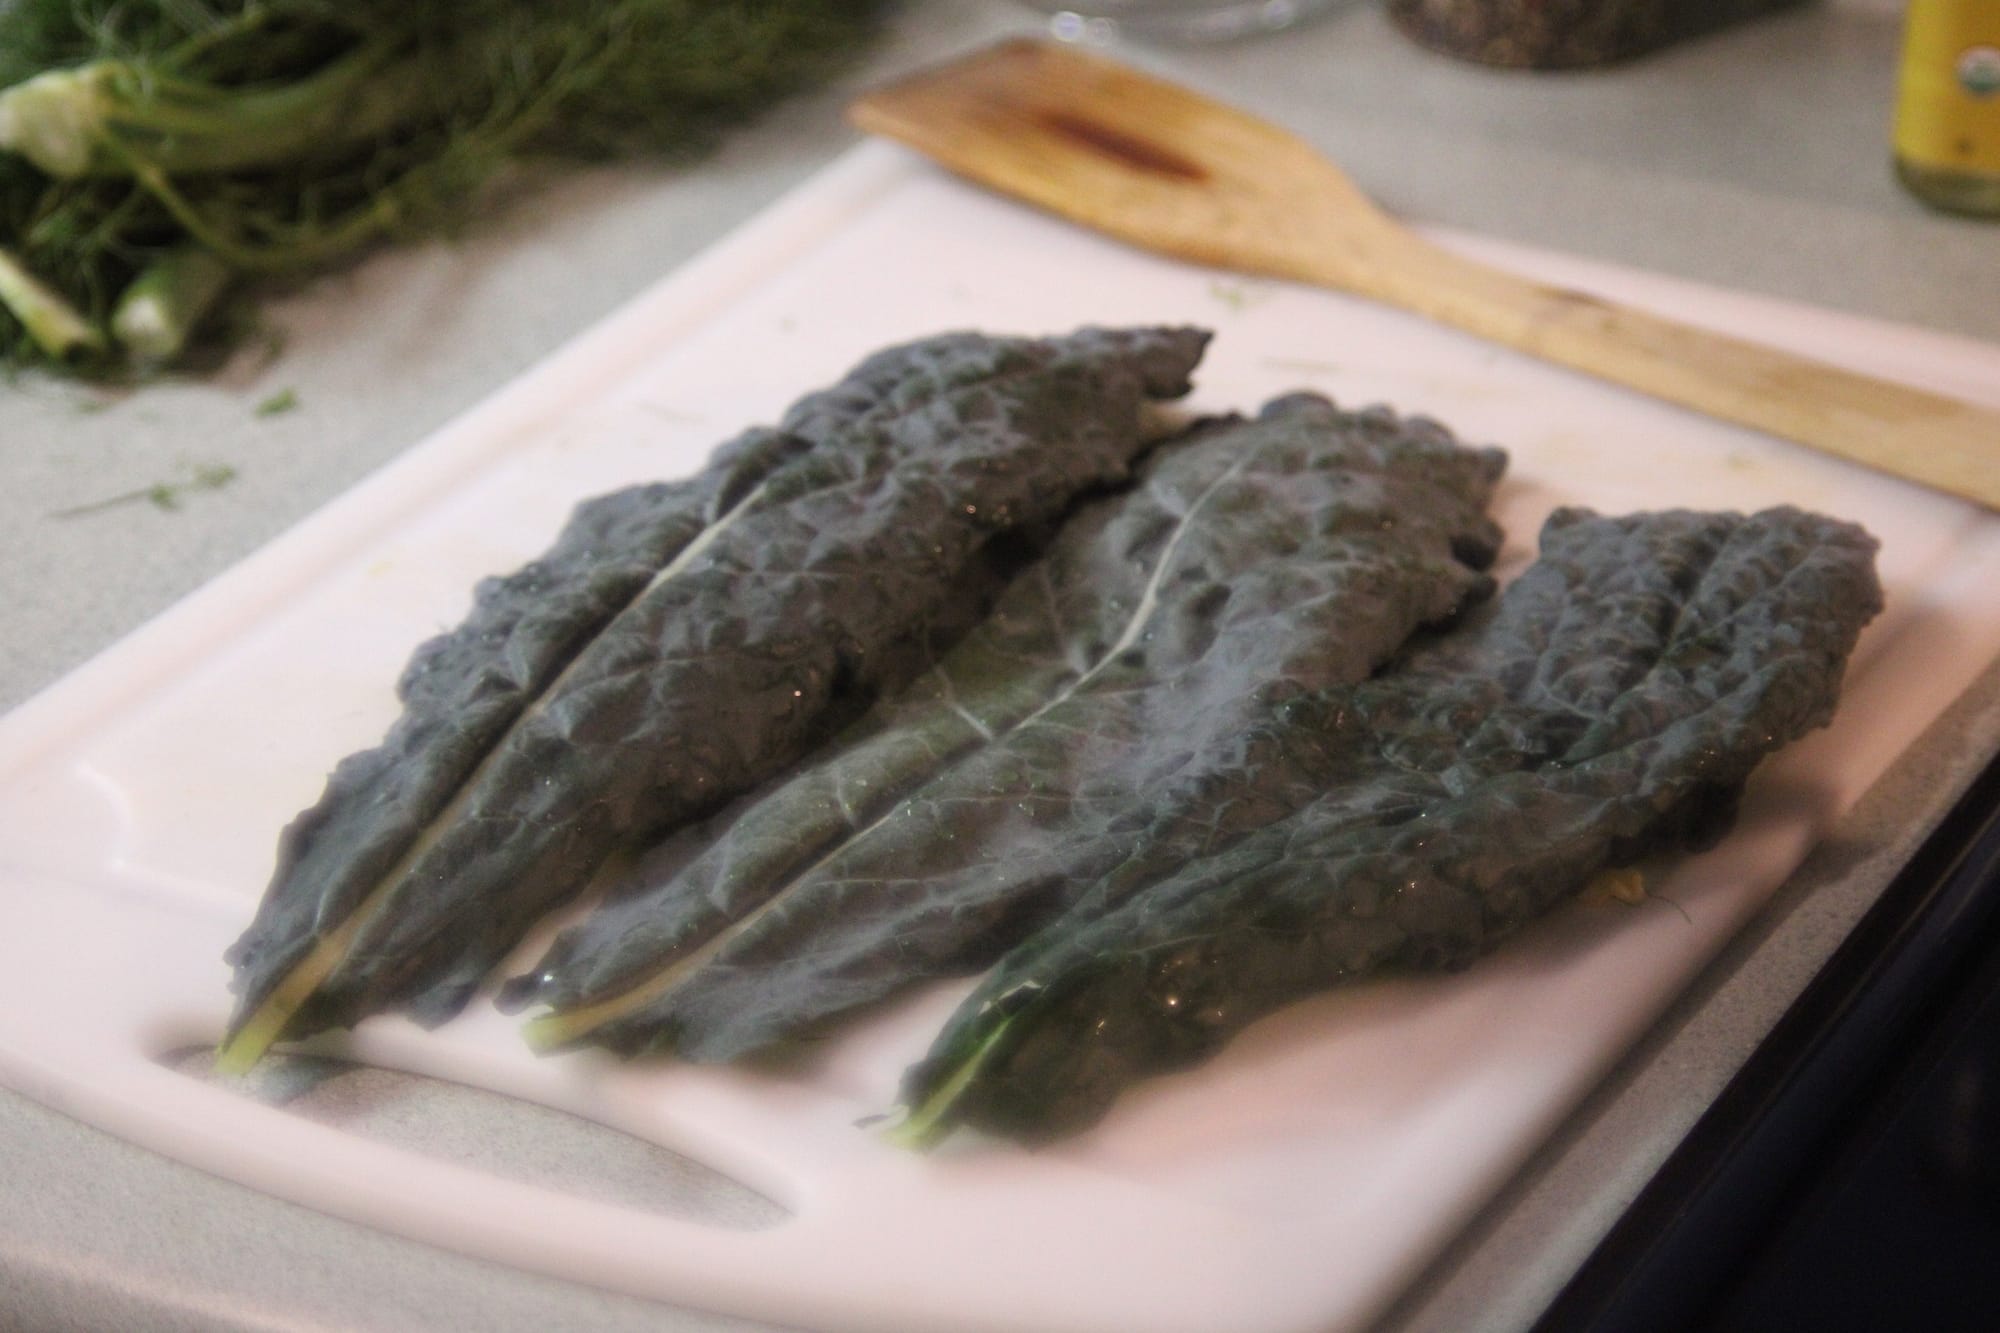 Kale on the cutting board.